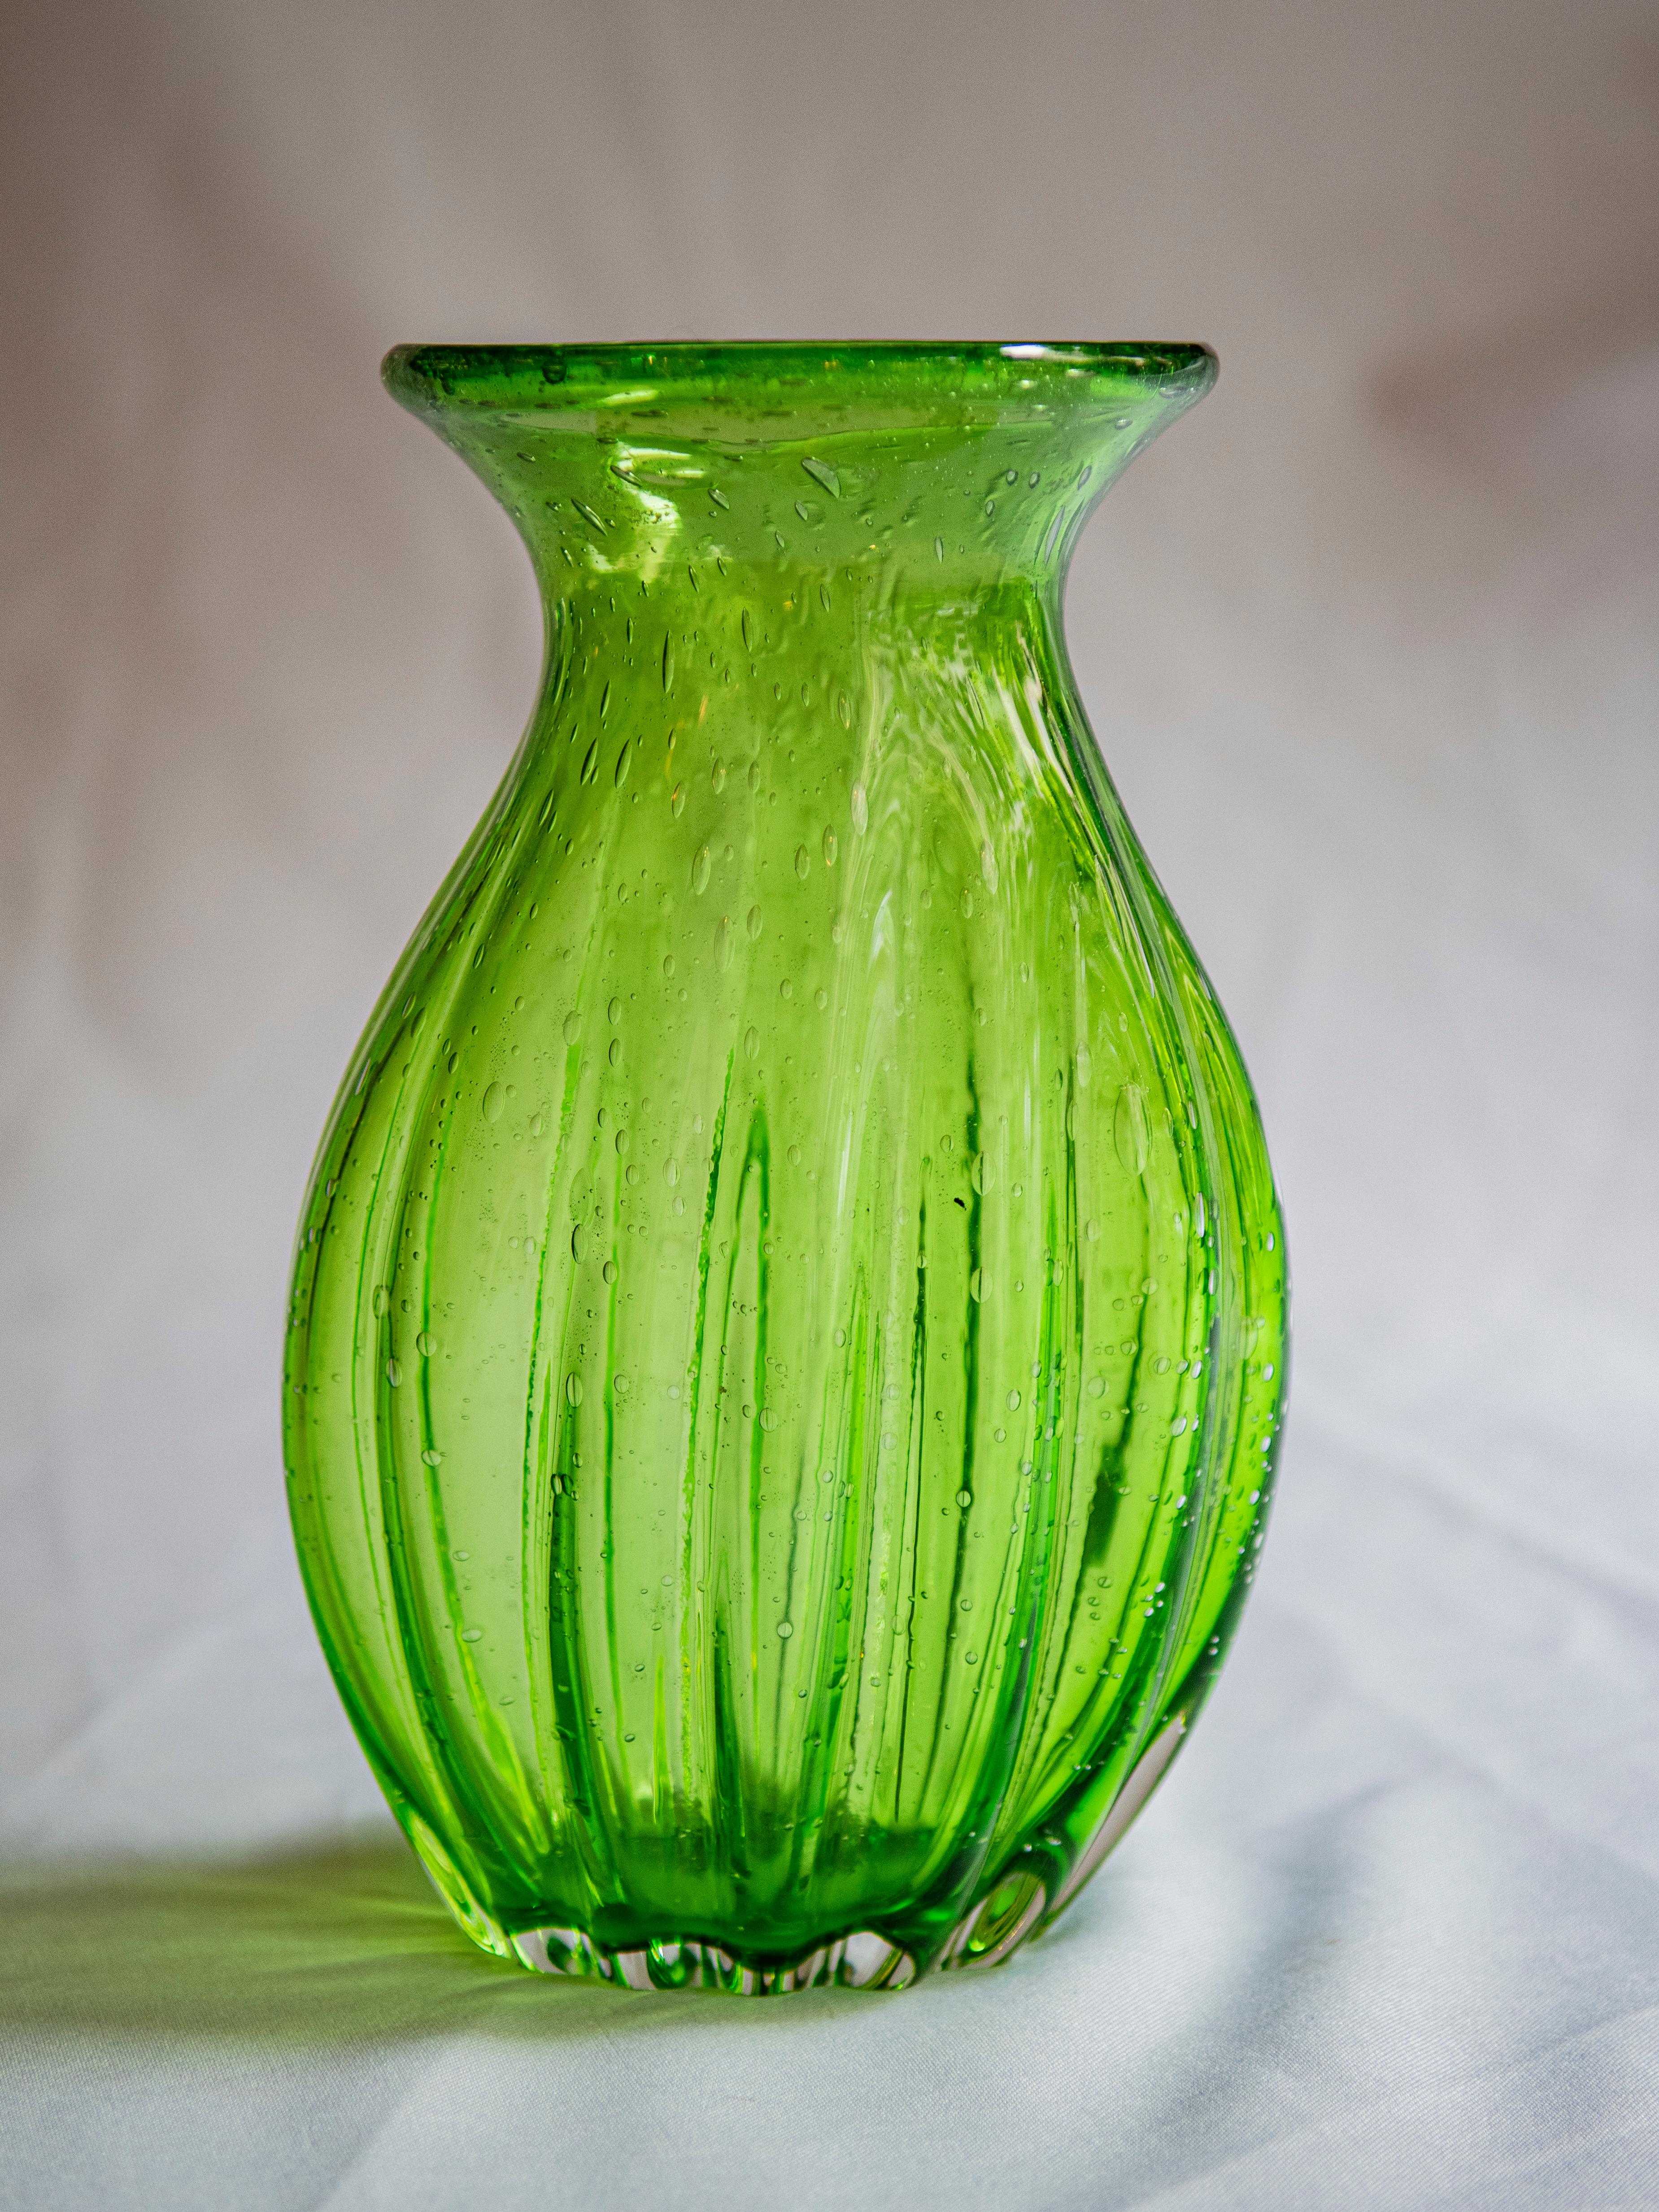 light green glass vase